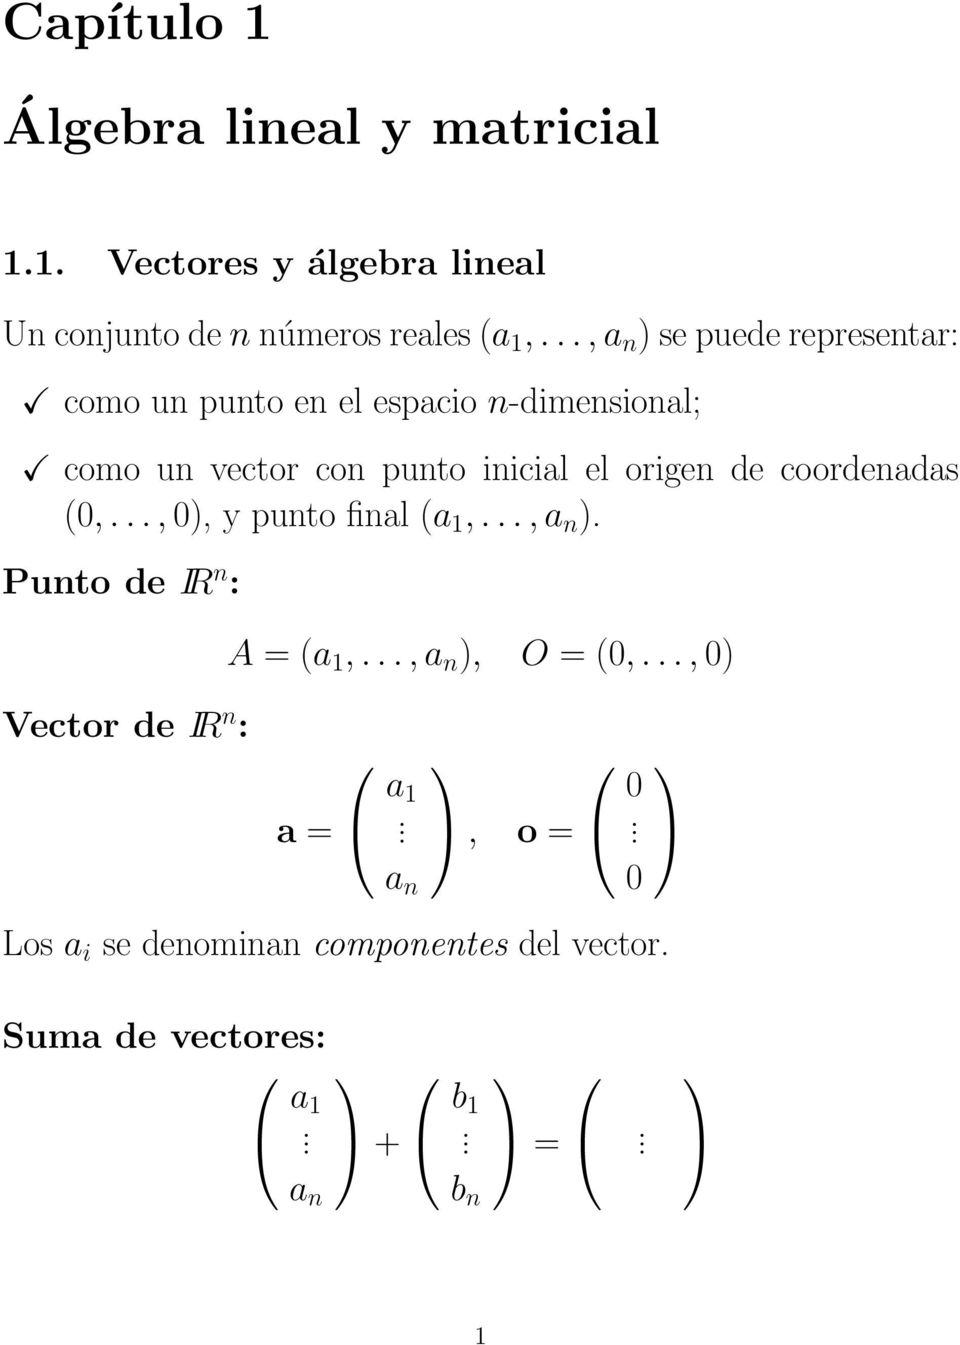 el espacio n-dimensional; como un vector con punto inicial el origen de coordenadas (,,), y punto